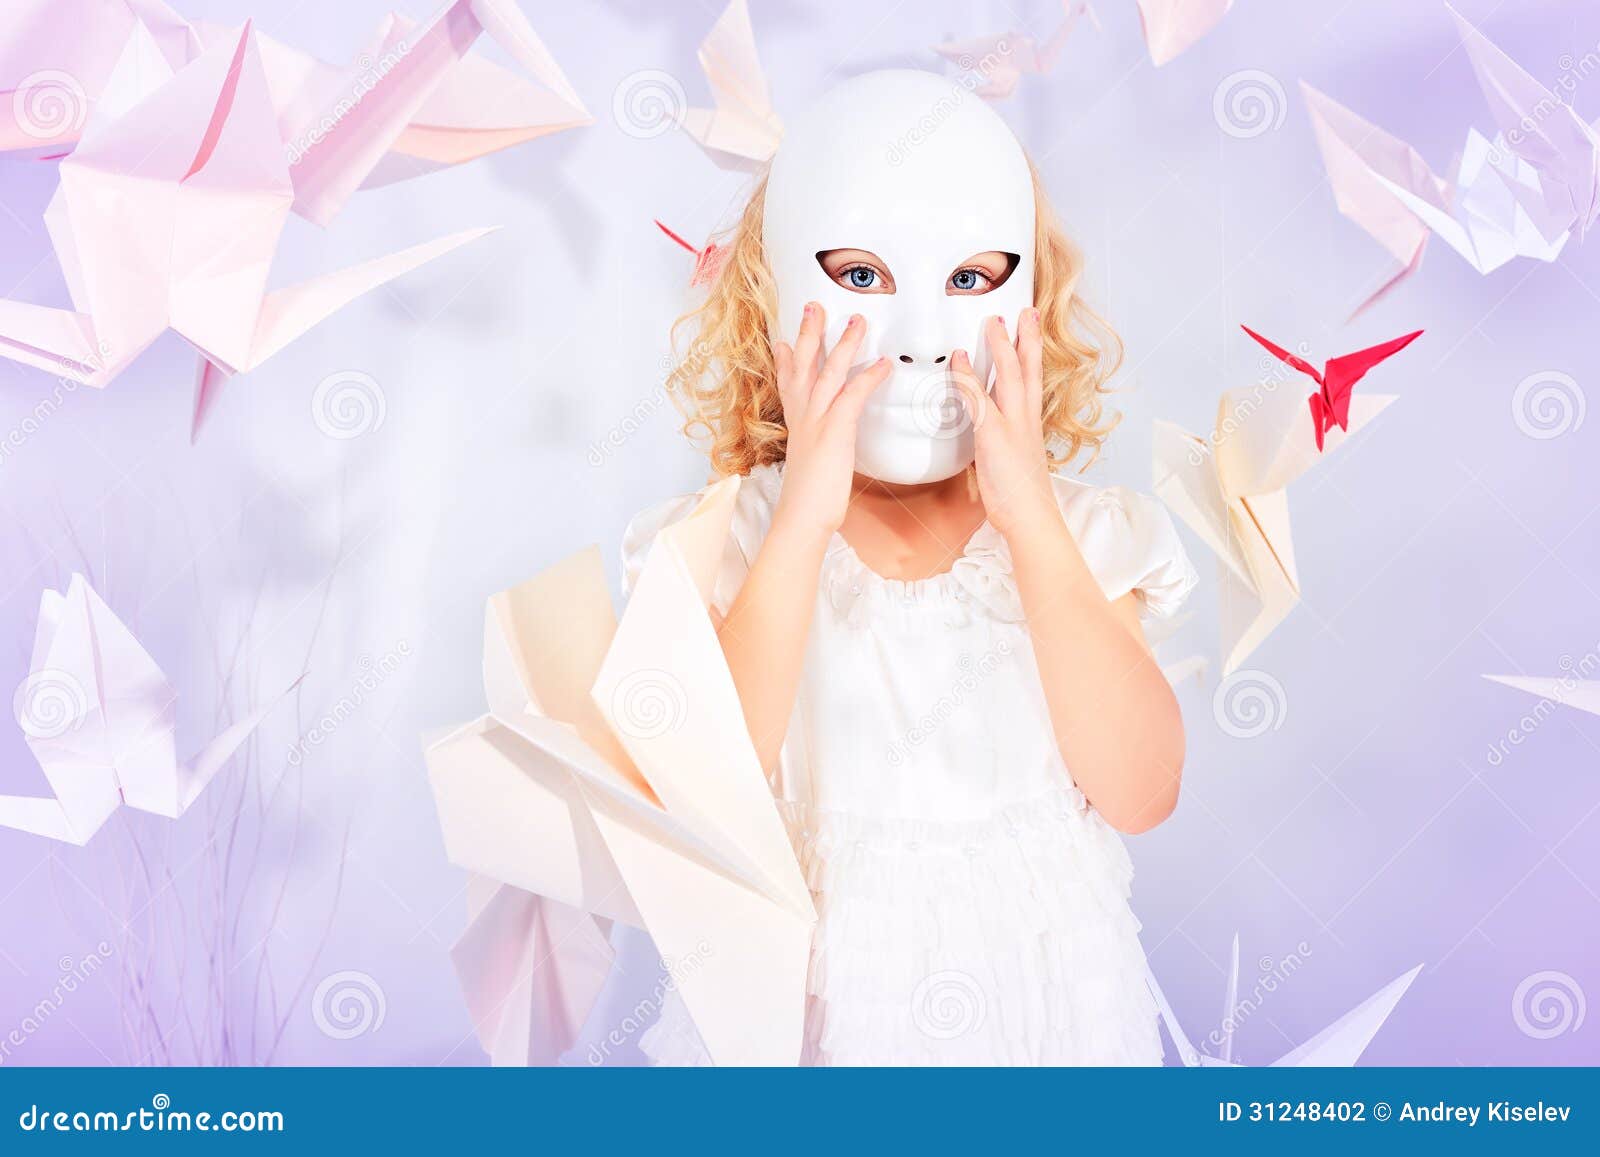 Masque blanc. Belle petite fille dans le masque en son monde rêveur entouré avec les oiseaux de papier.